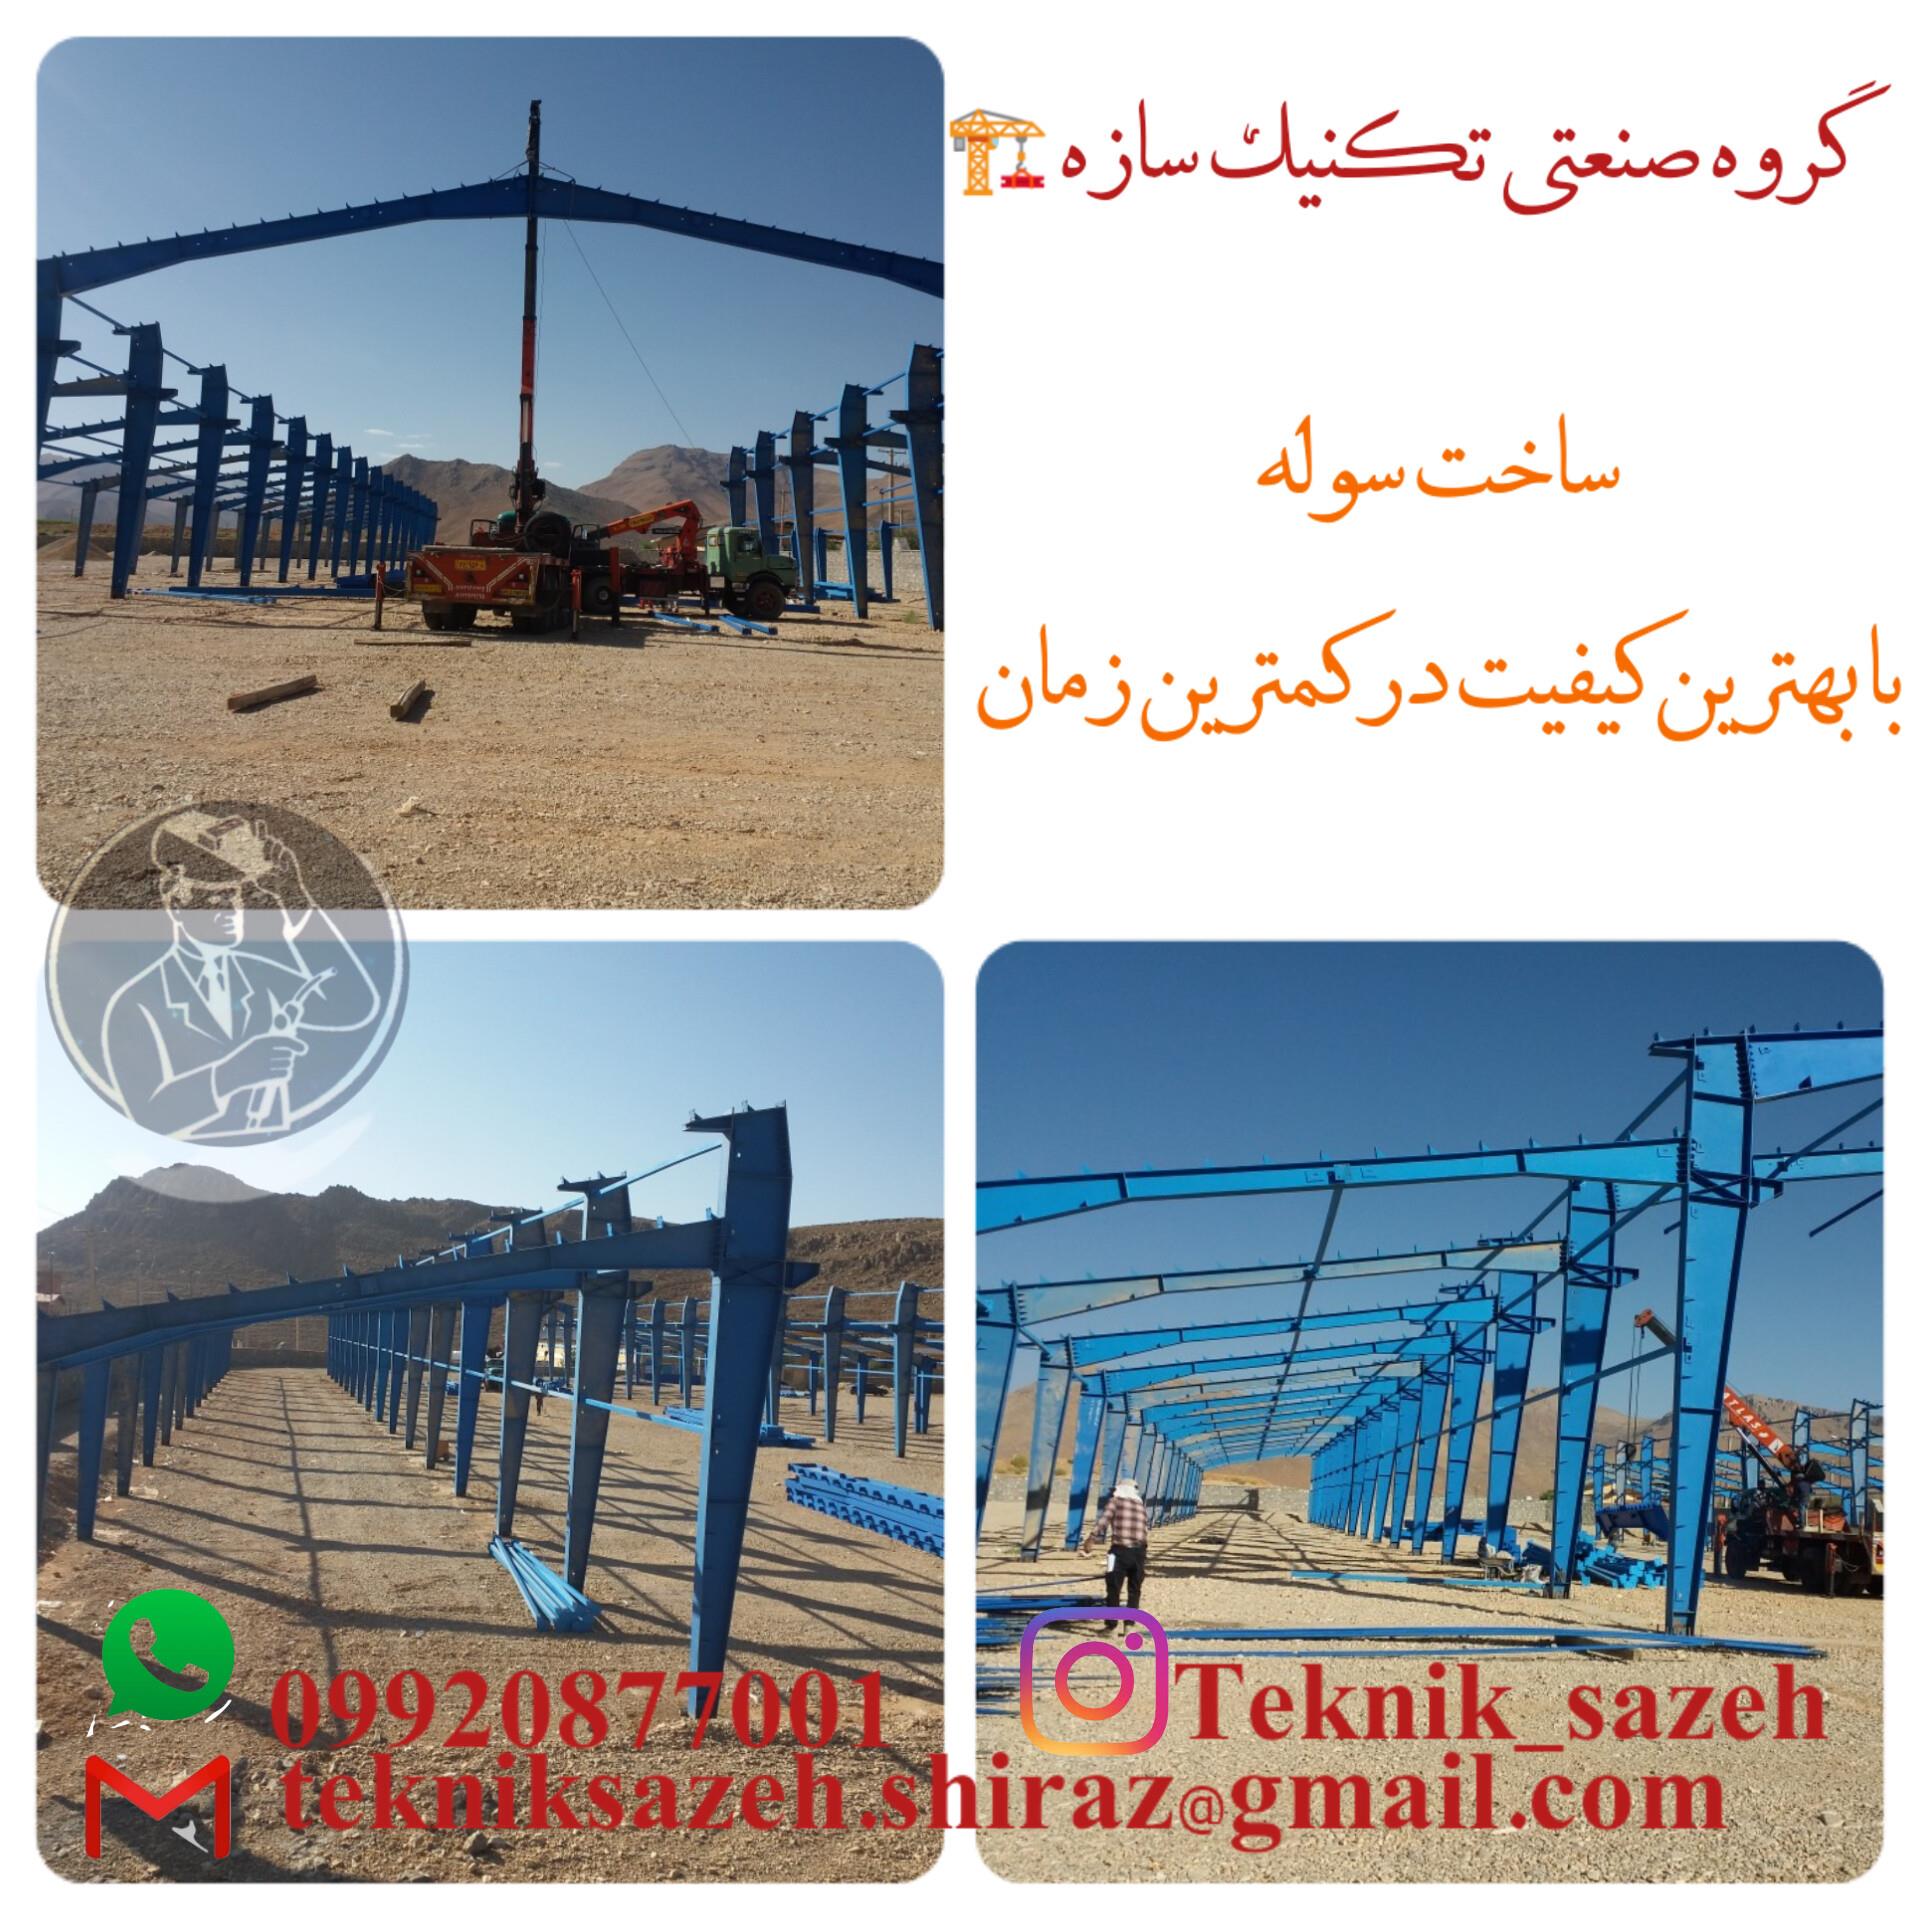 ساخت-سوله-صنعتی-کارگاهی-در-شیراز-گروه-صنعتی-تکنیک-سازه